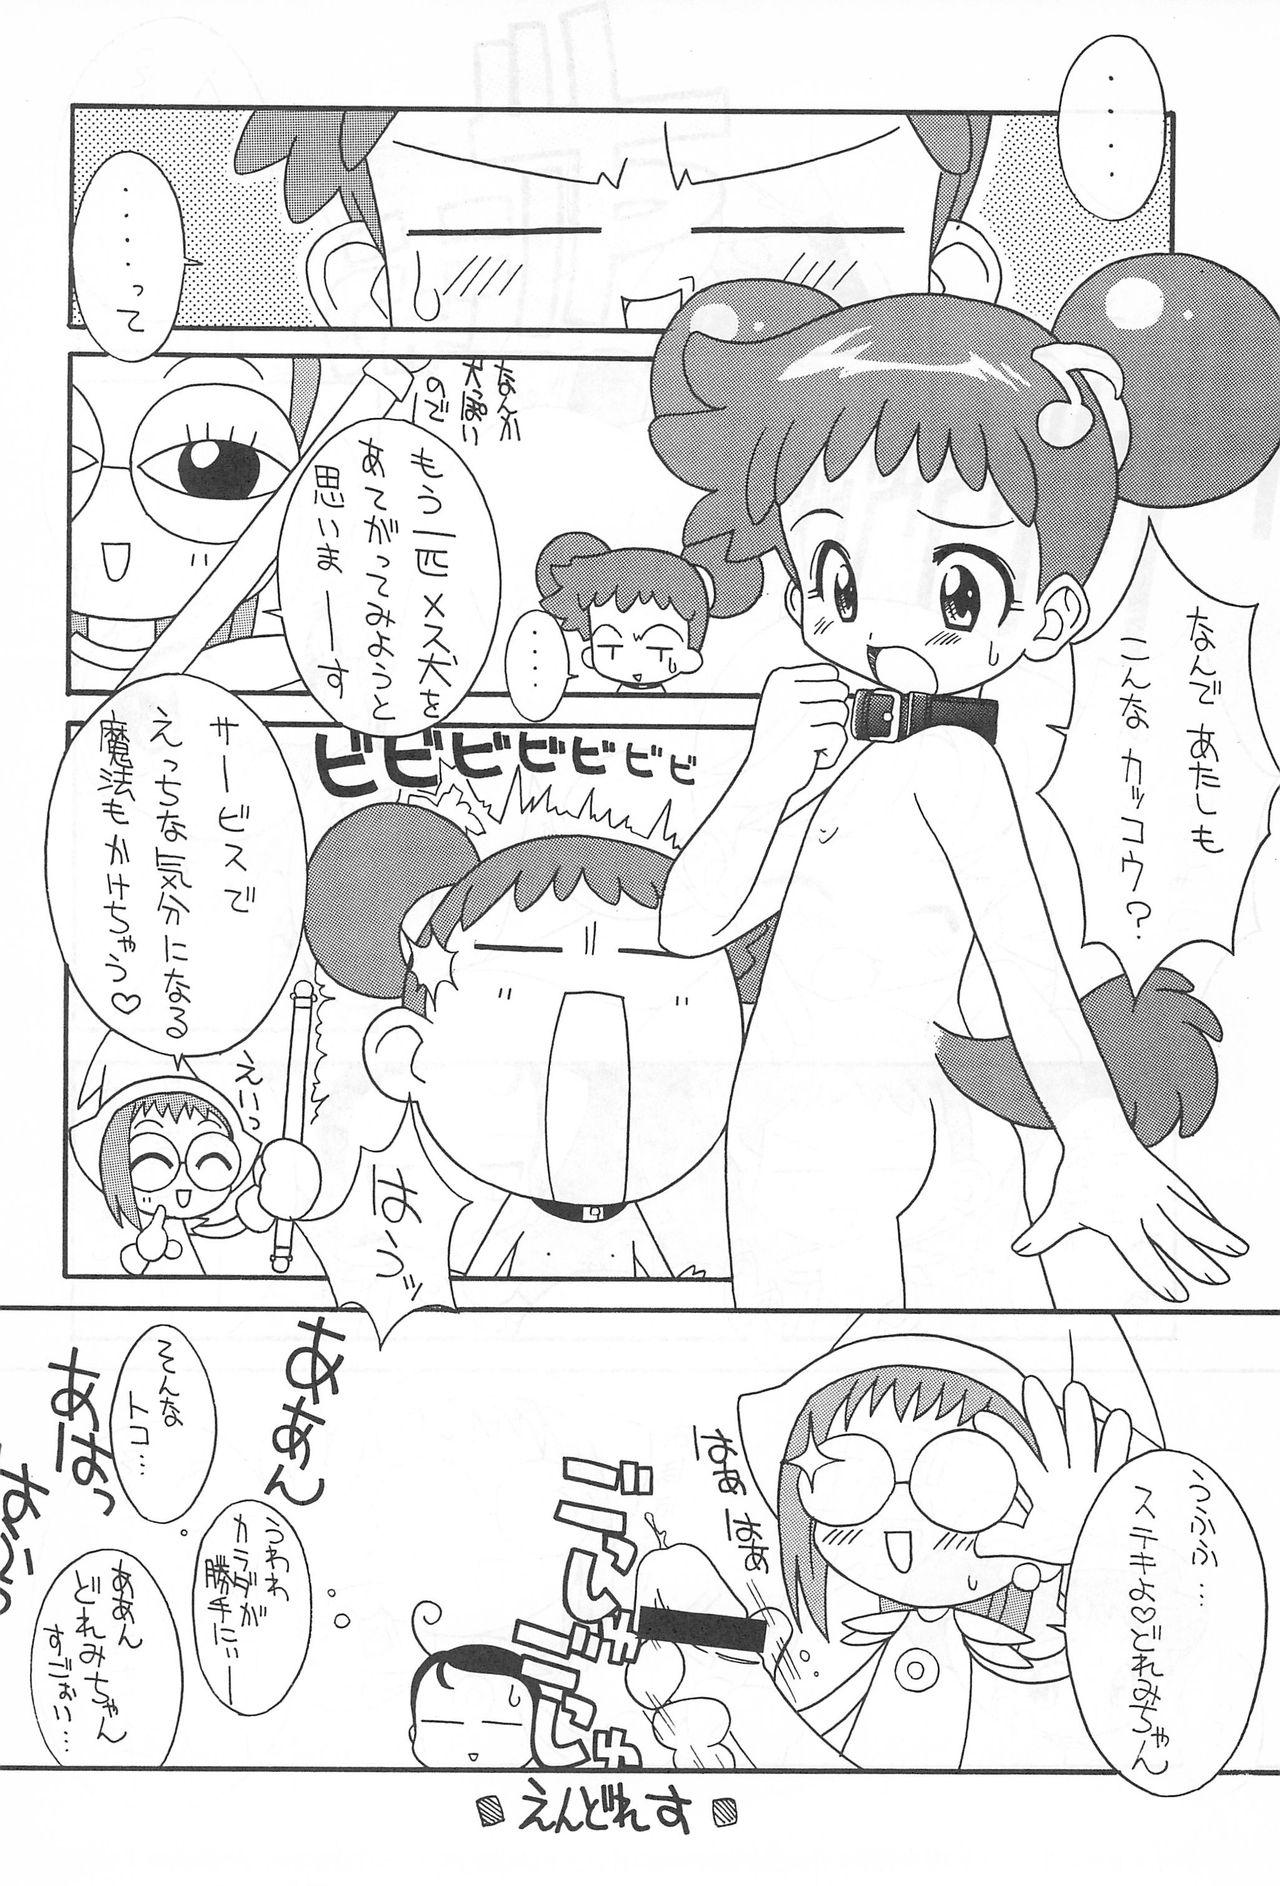 Self Pretty Ecchi - Ojamajo doremi Leaked - Page 10